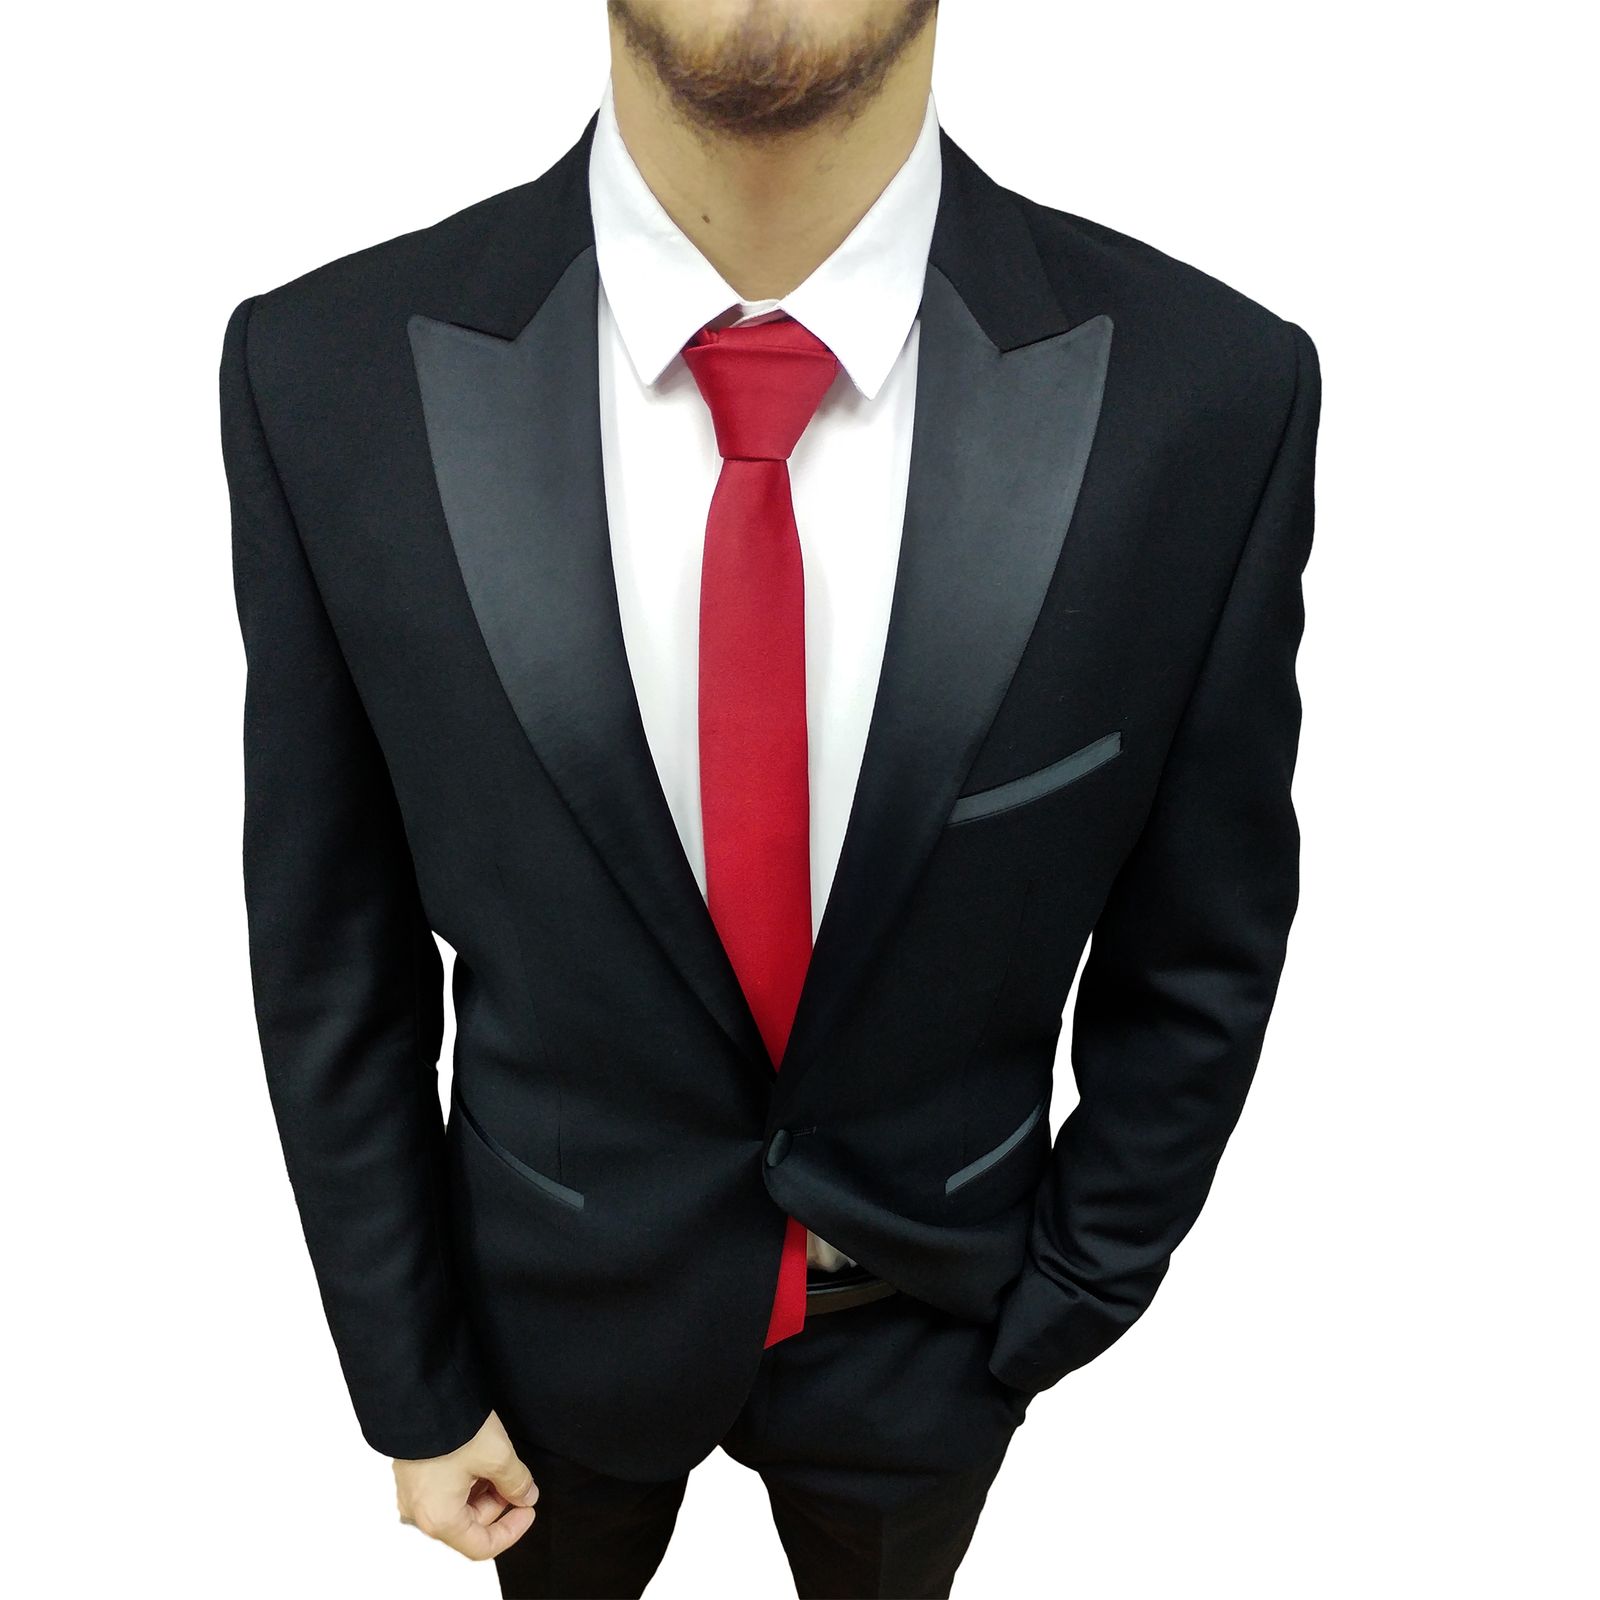 ست کراوات و پاپیون و دستمال جیب مردانه کد R -  - 6